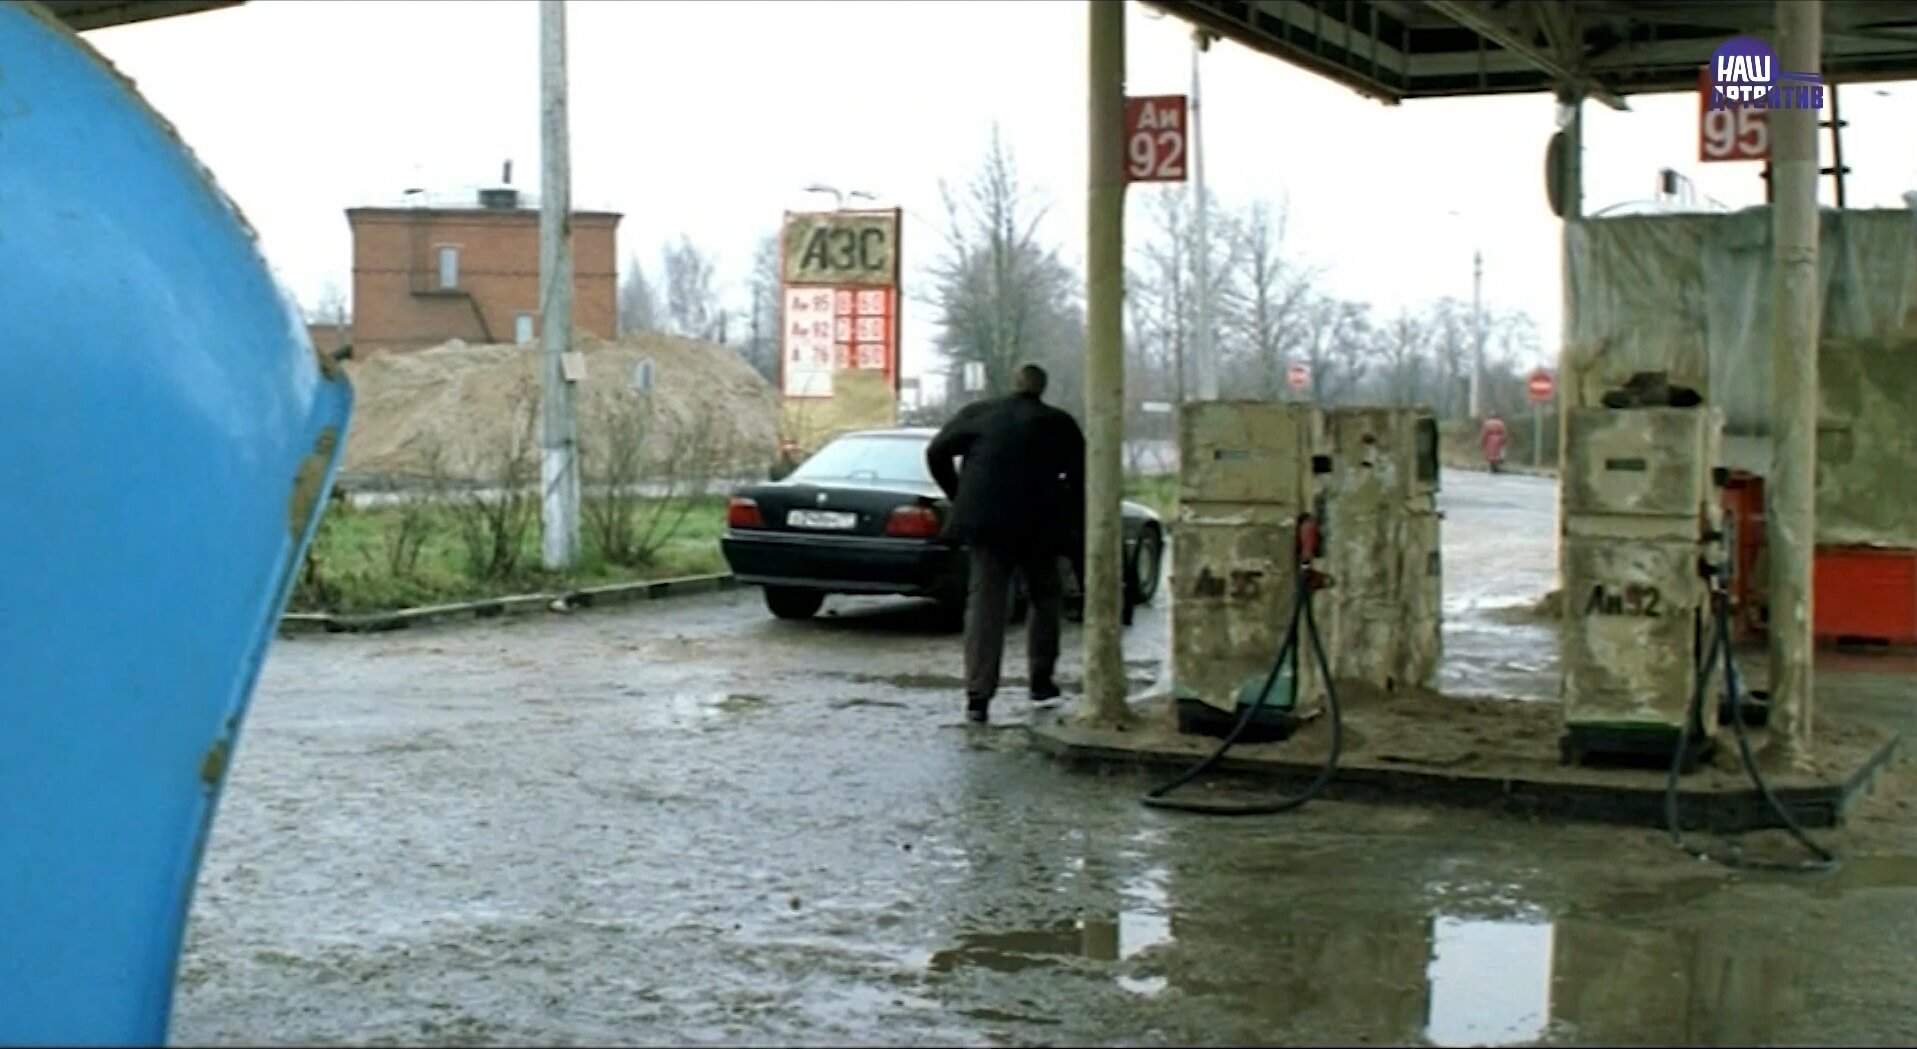 Заправка из фильма «Бумер», на которой герои меняли магнитолу на бензин: как она выглядит сегодня